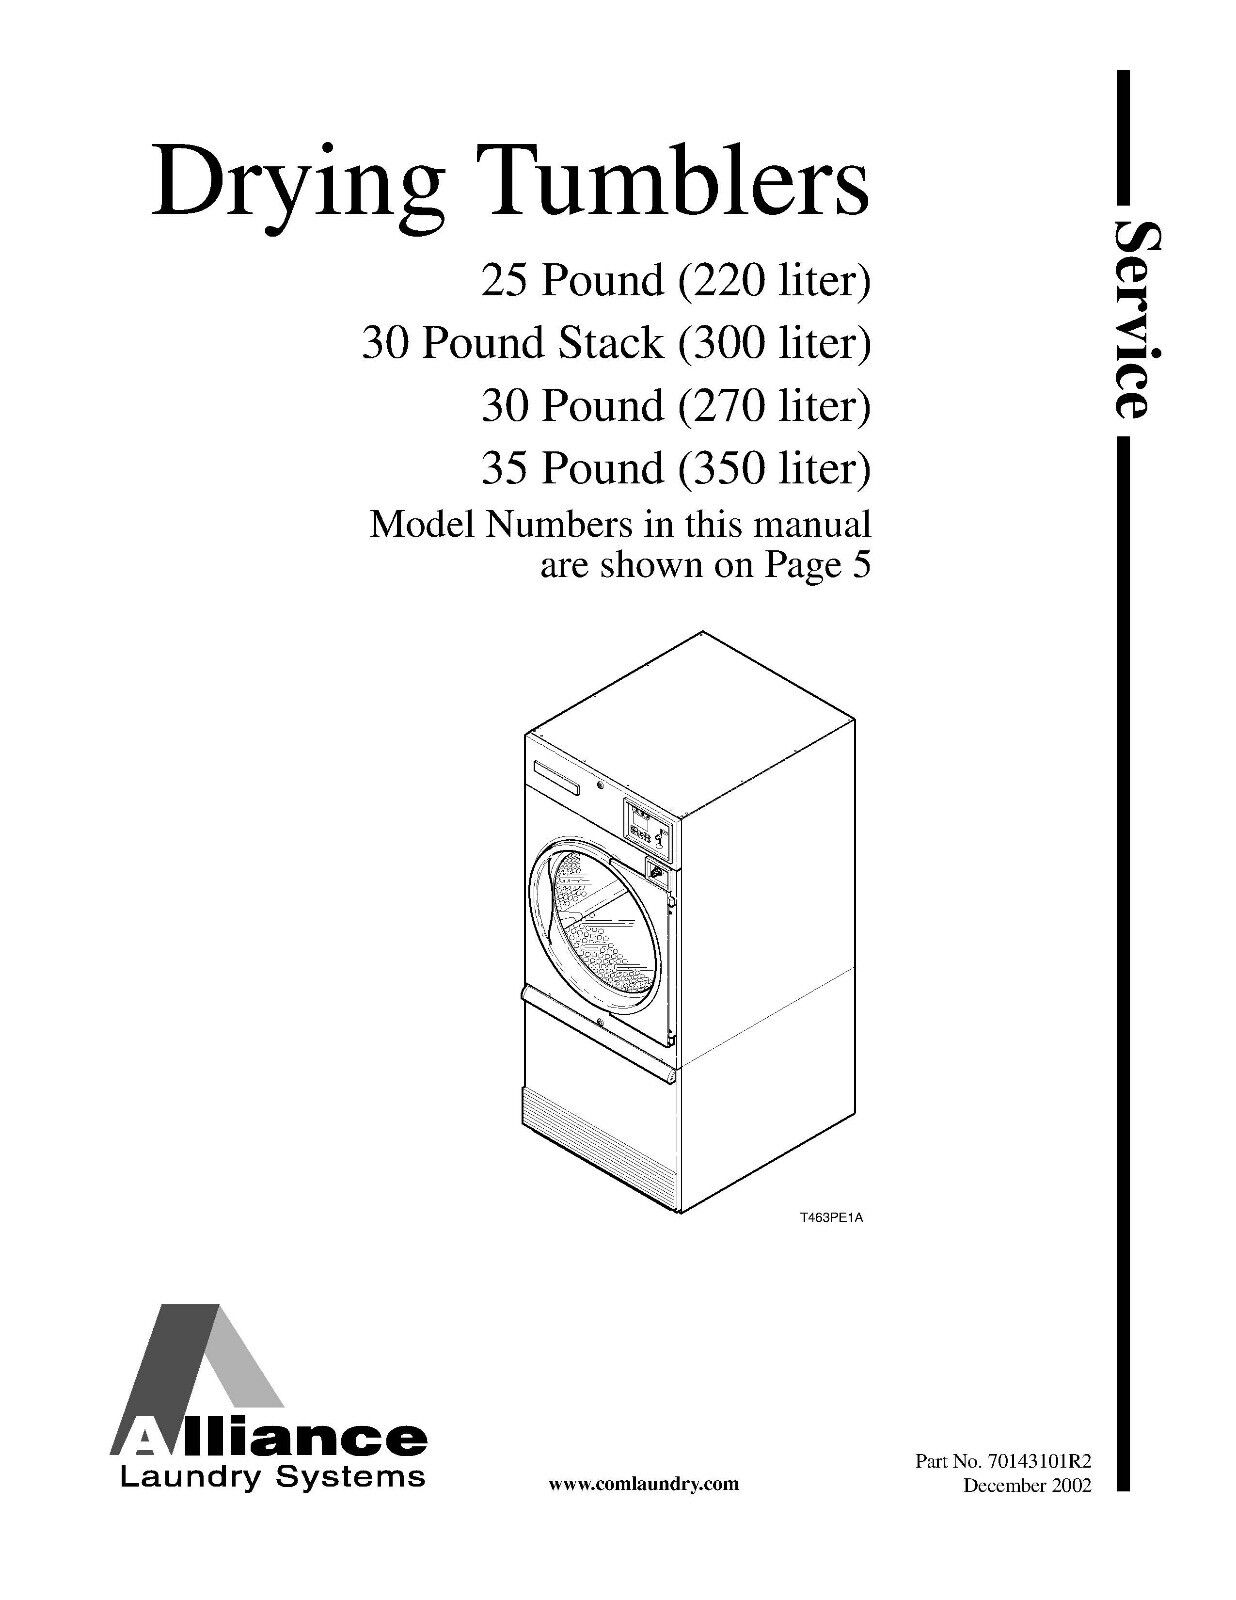 Repair Manual: Alliance/Huebsch/SpeedQueen Washers & Dryers (see Models below)